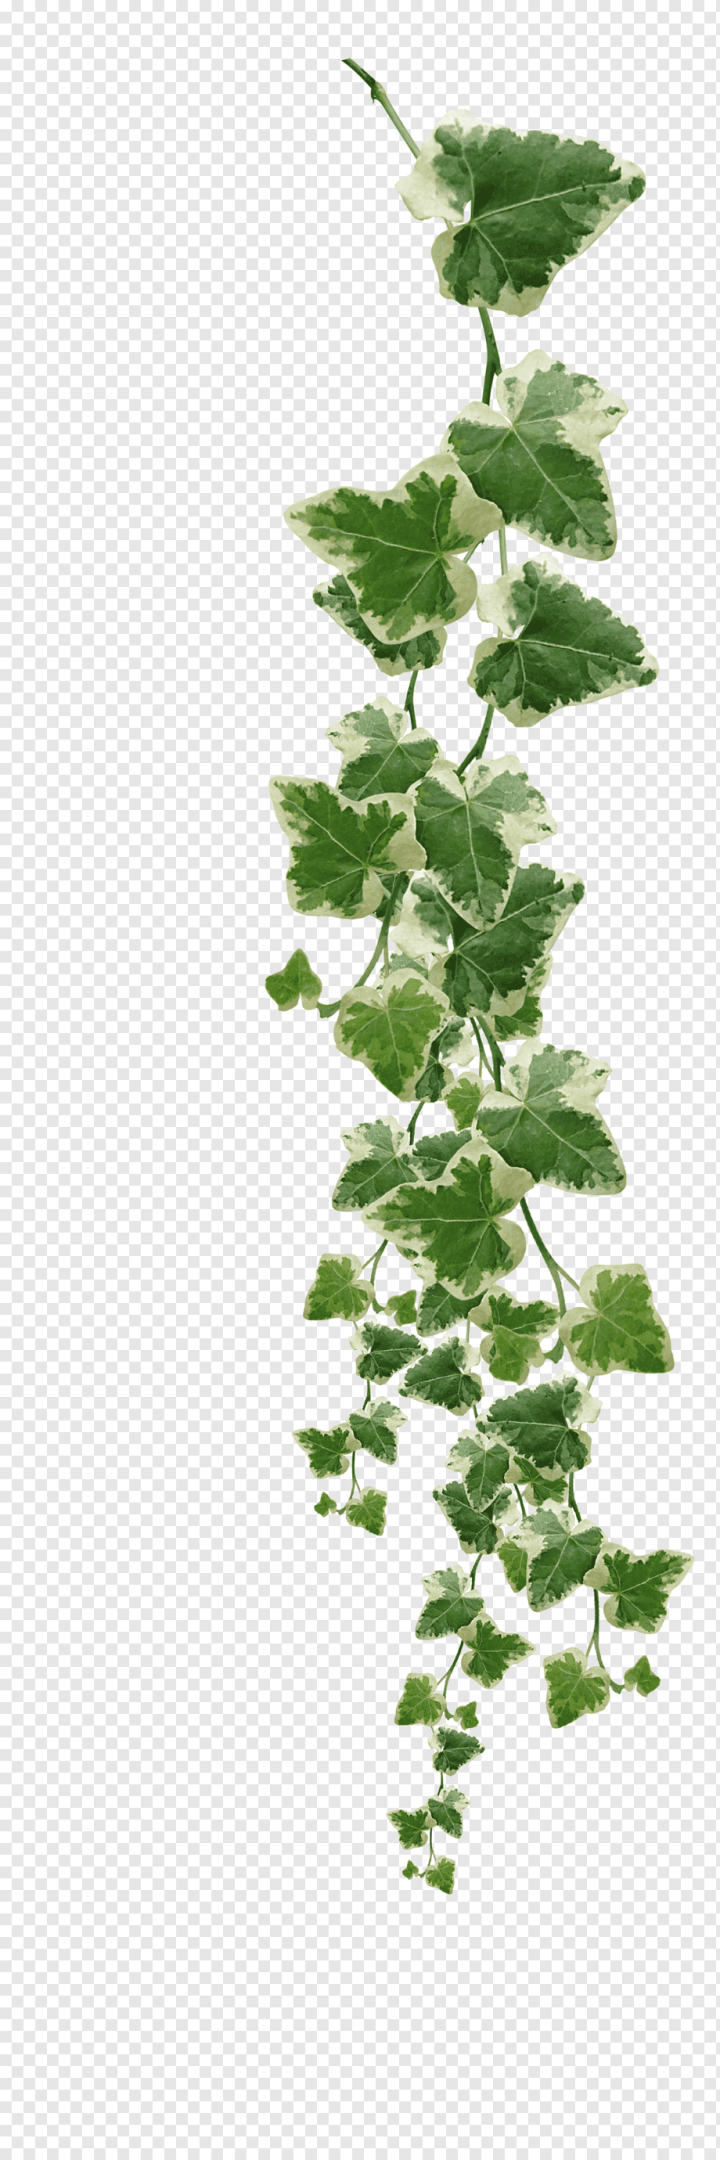 Plant Vines Green, Leaves Stock Illustration